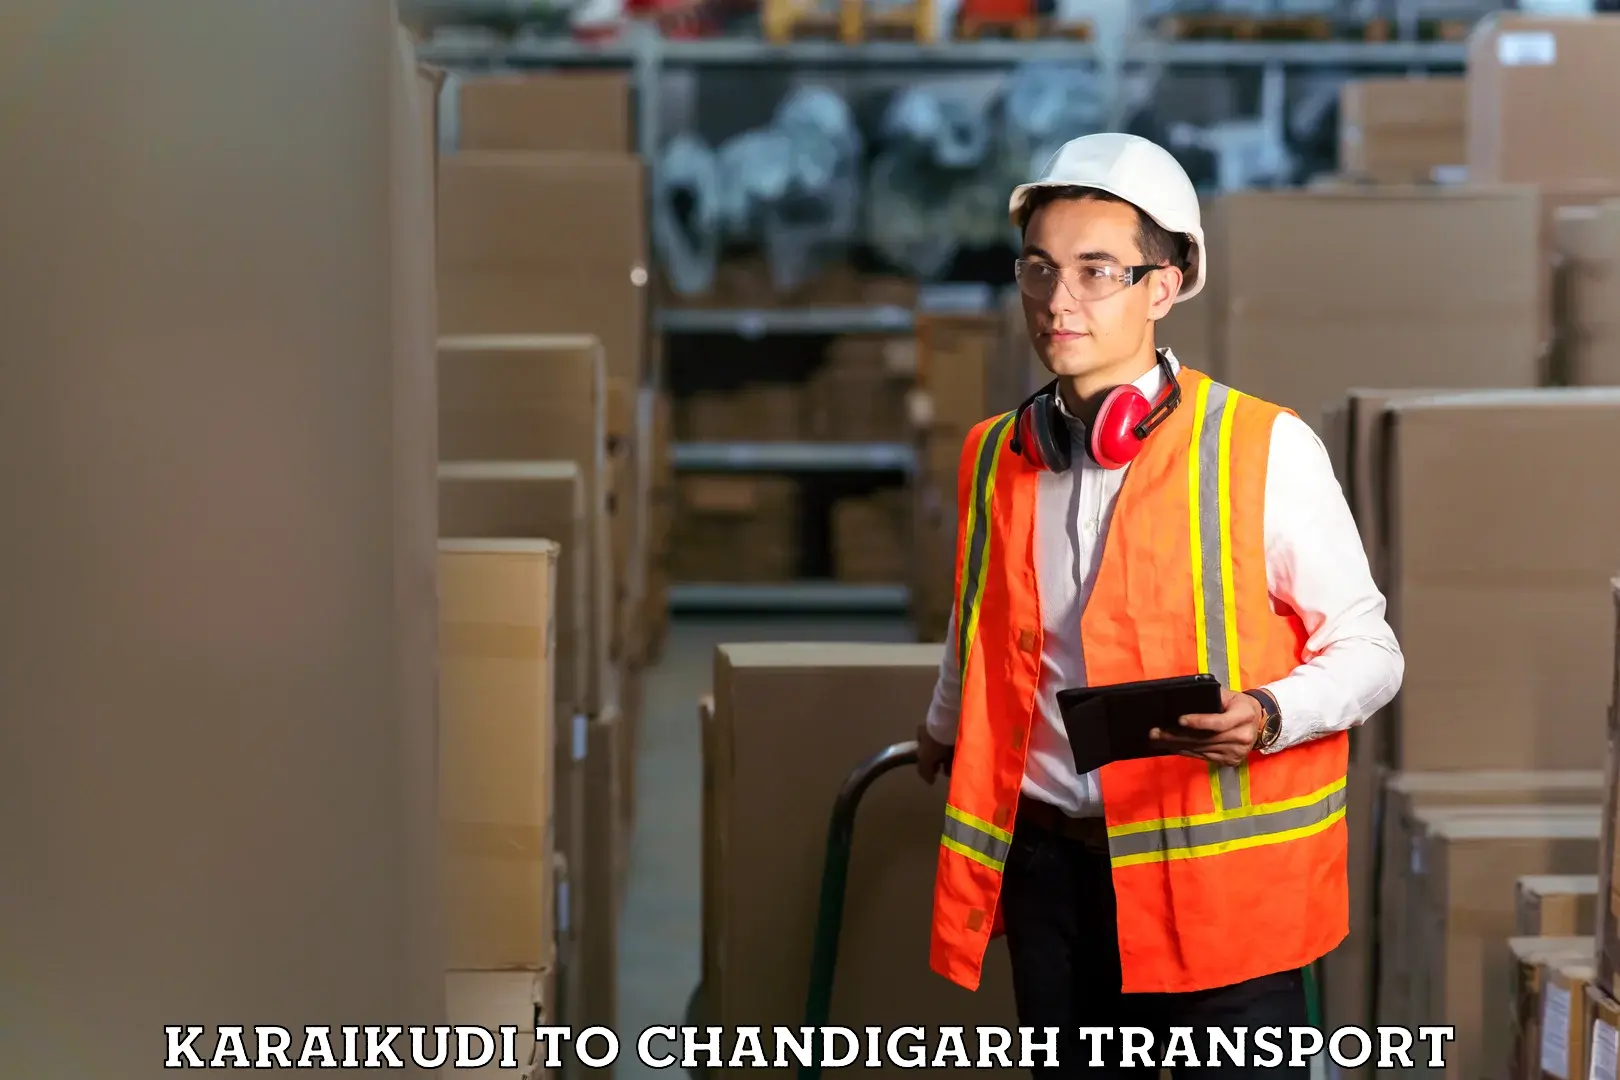 Lorry transport service Karaikudi to Chandigarh